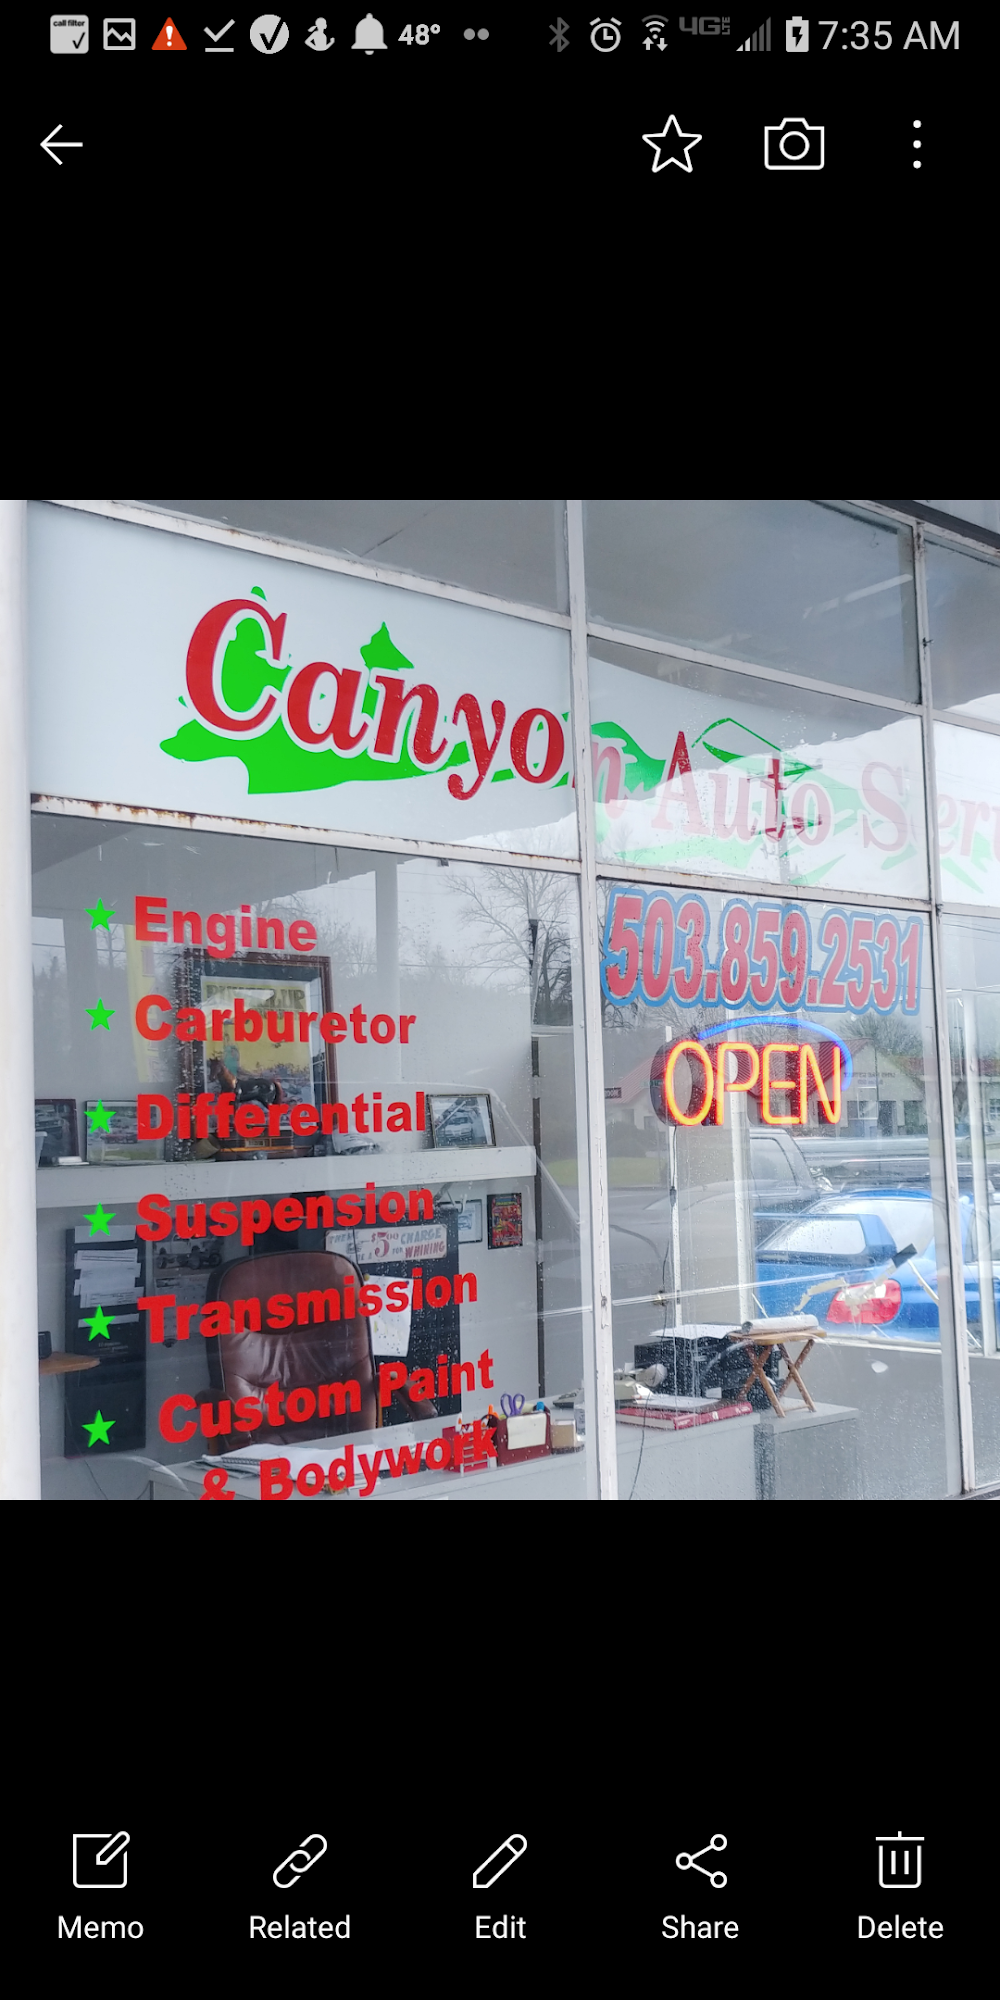 Canyon Auto Service